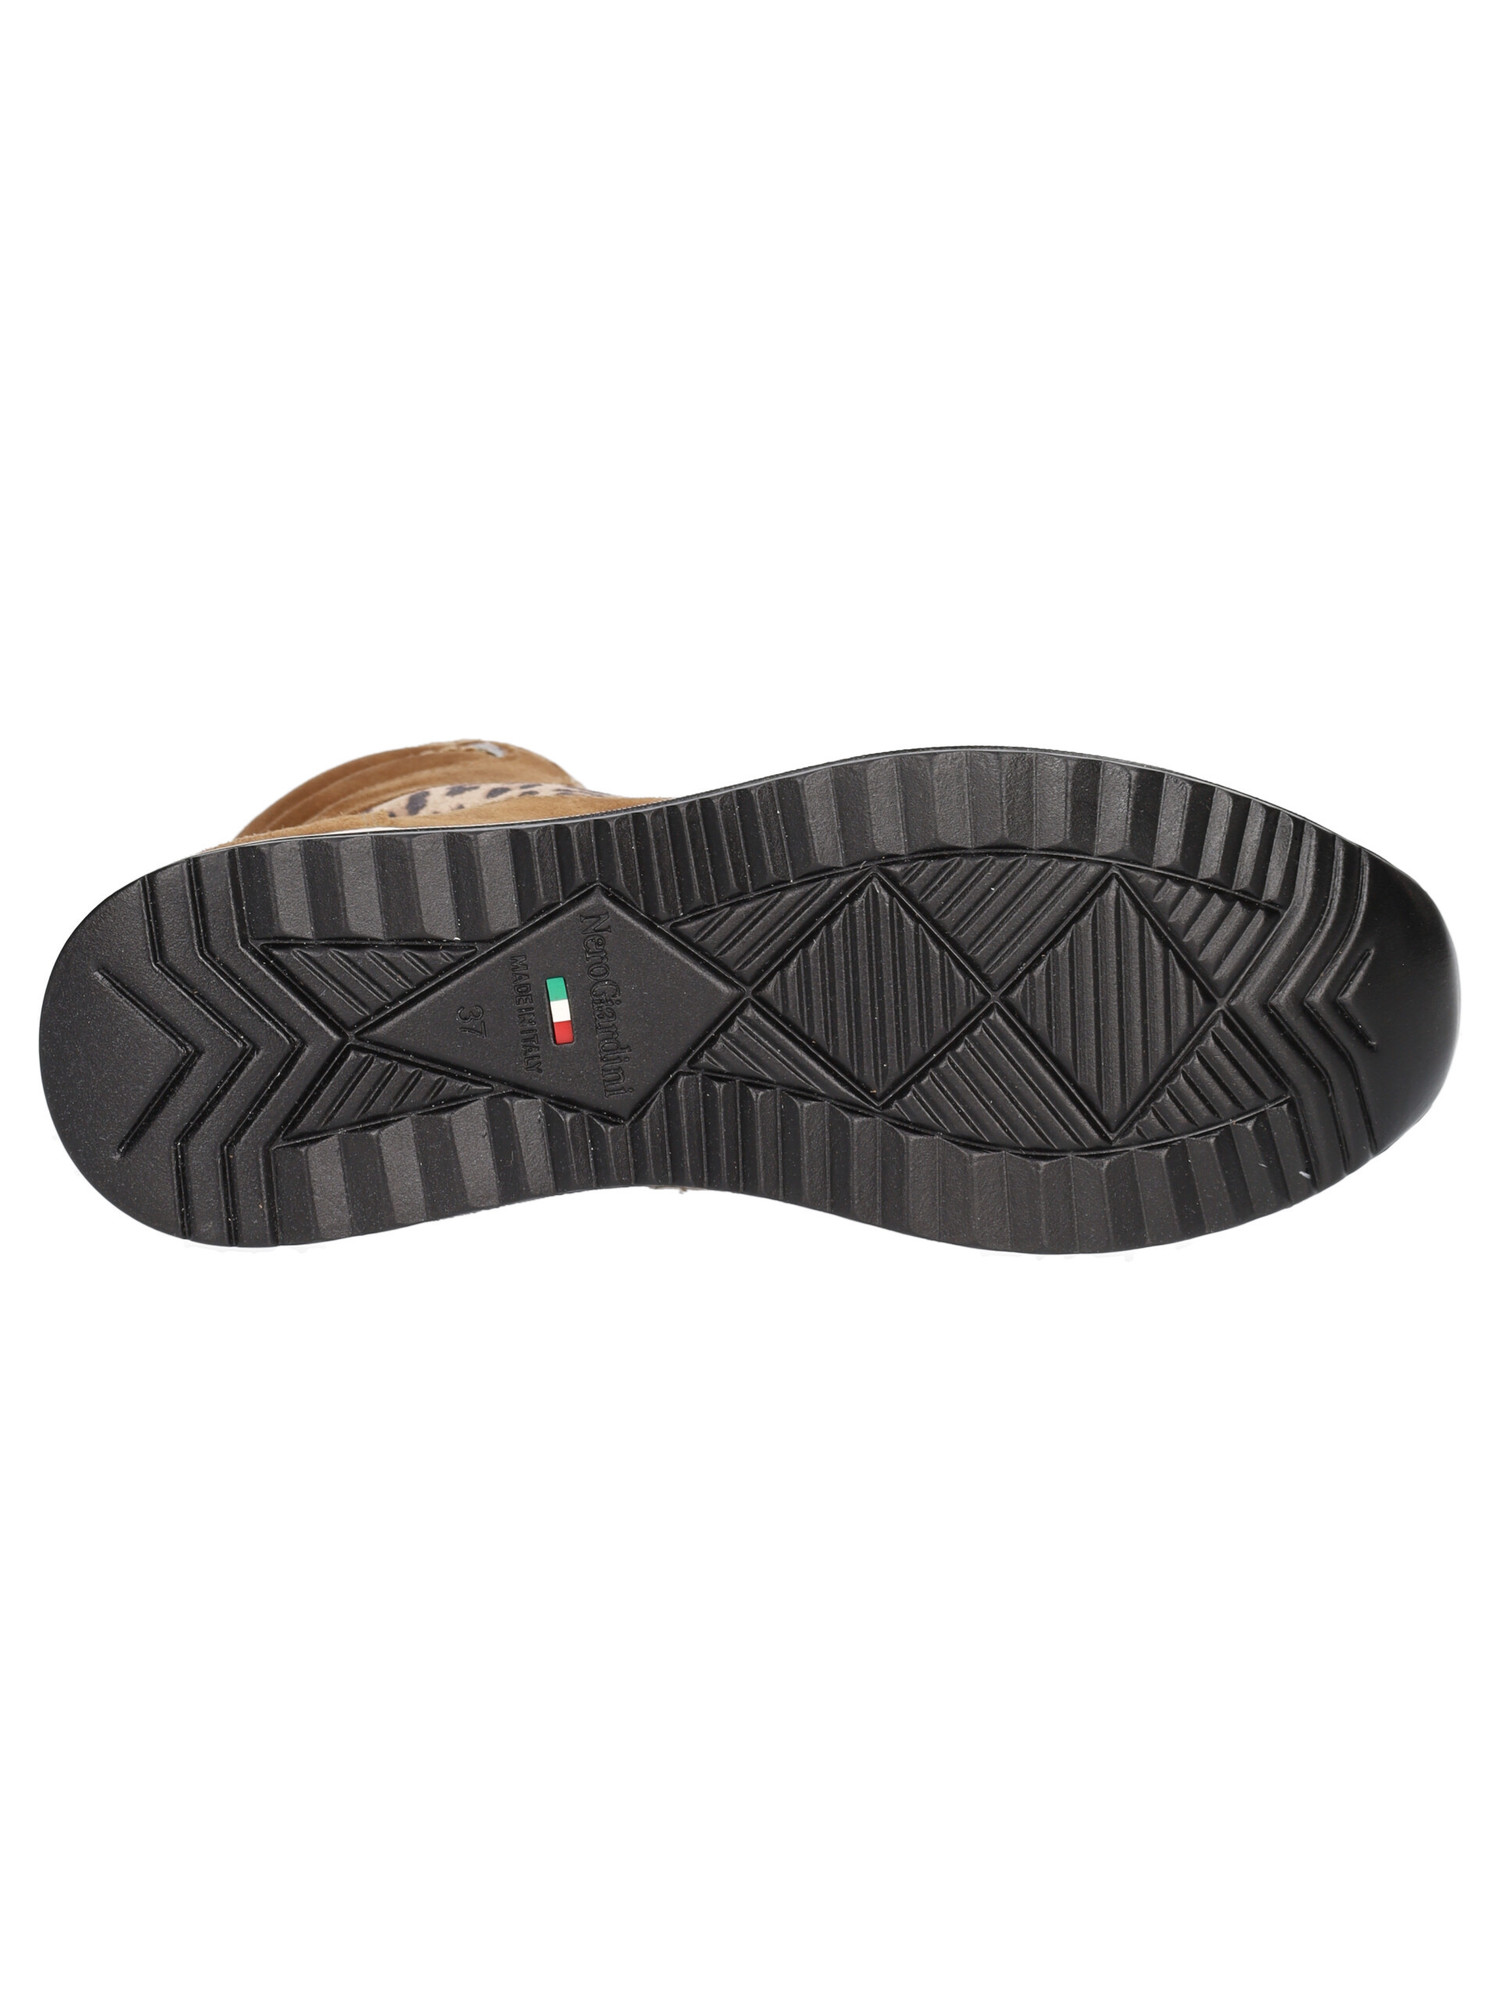 sneaker-nero-giardini-da-donna-cuoio-7094c2